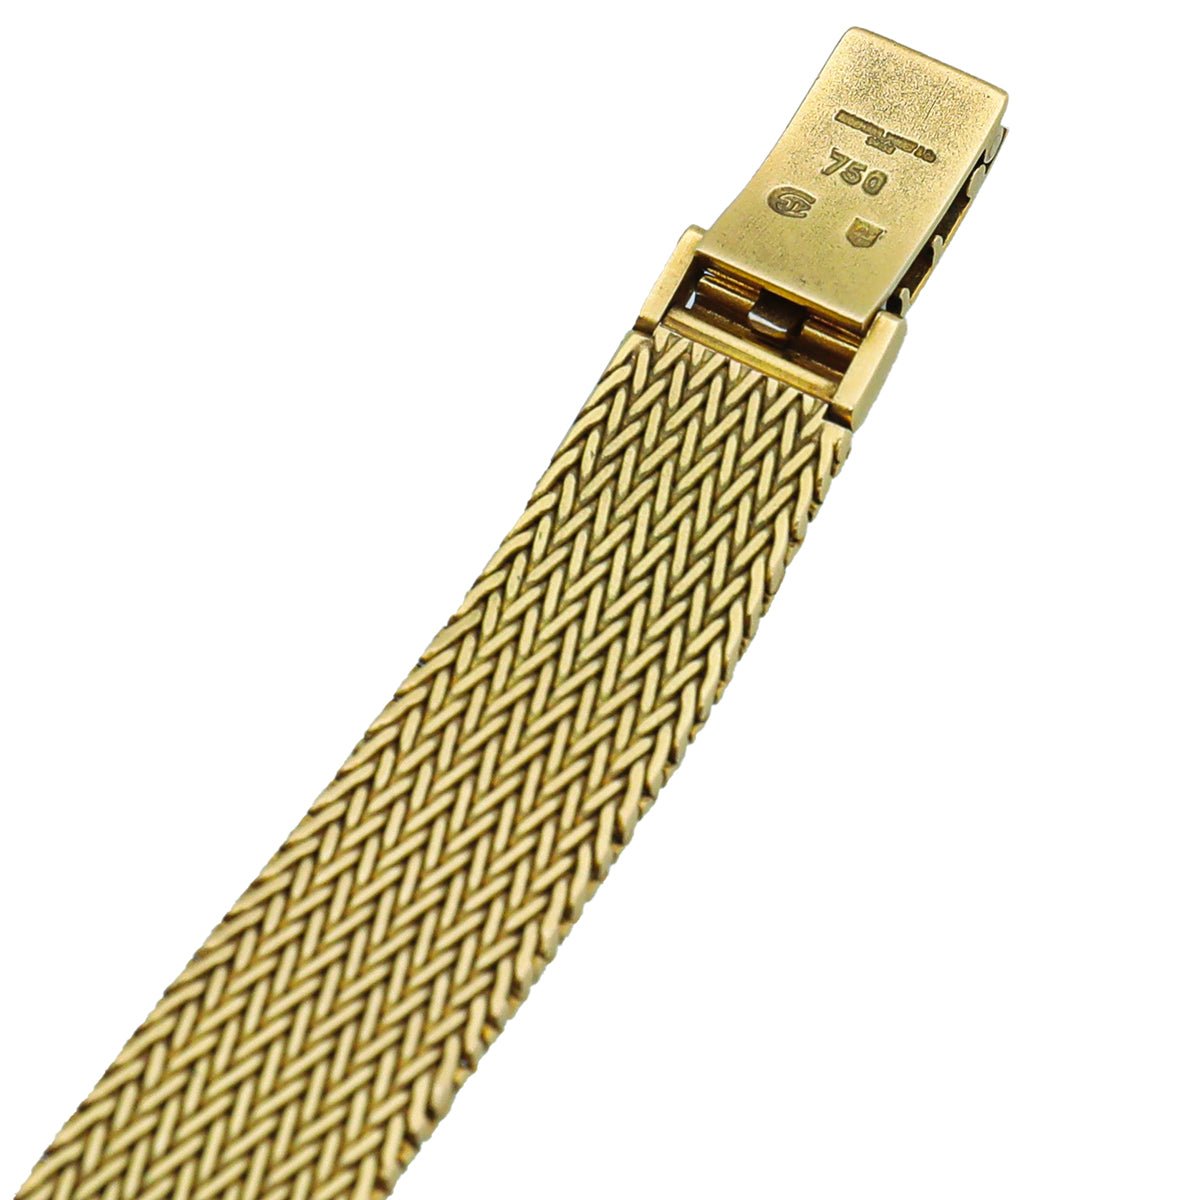 Audemars Piguet - Audemars Piguet 18K Yellow Gold Vintage Cobra Integral Bracelet Watch | The Closet